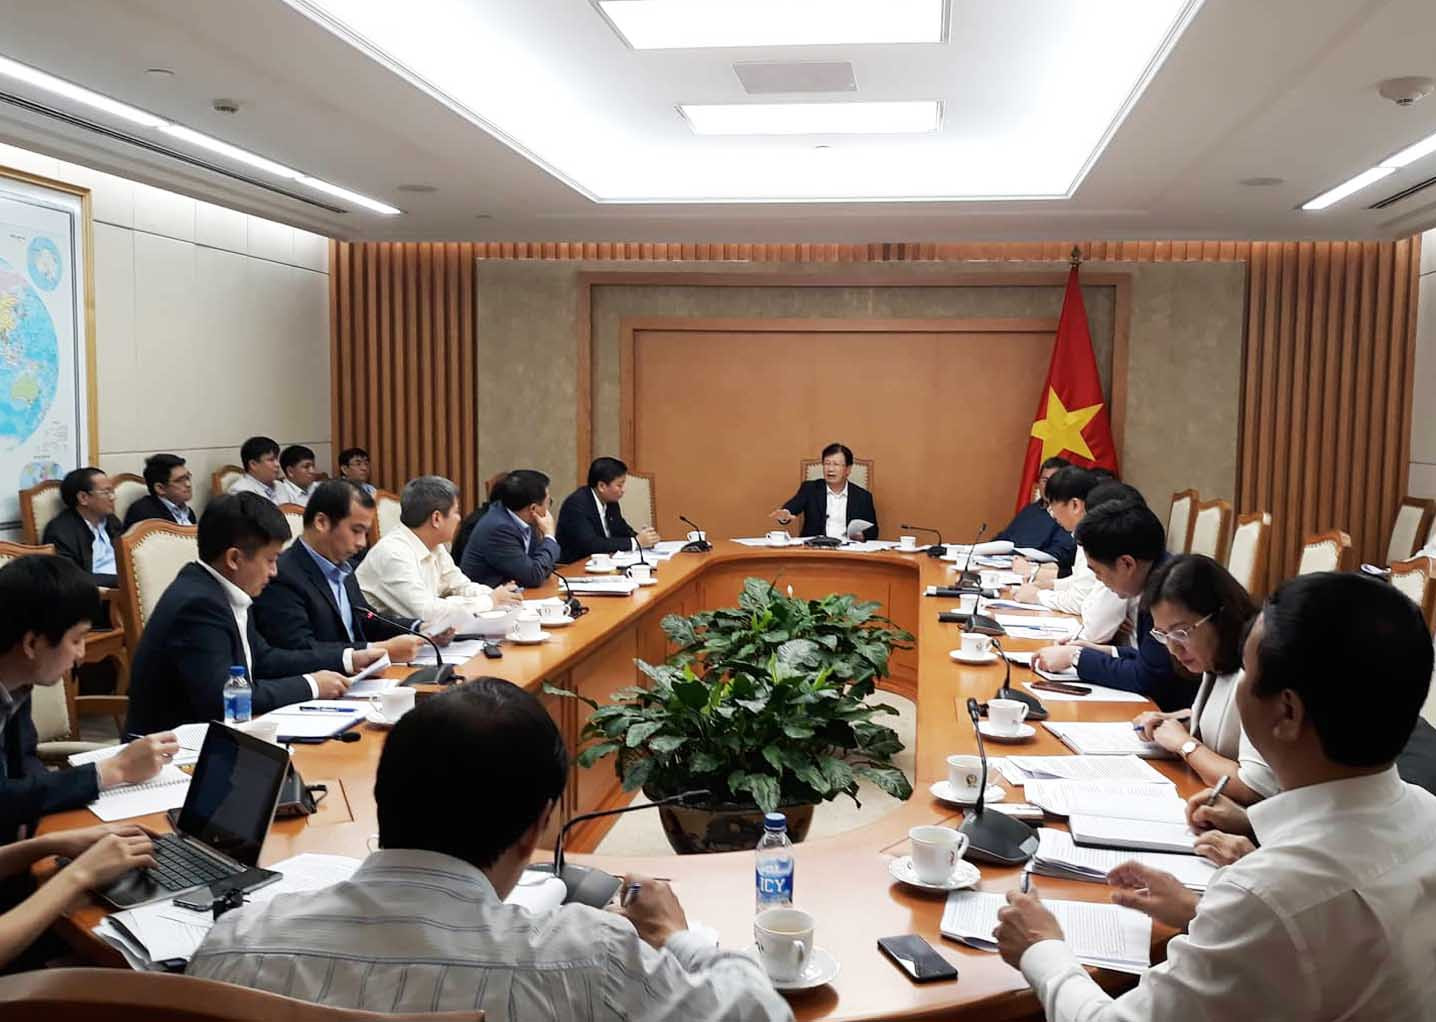 Cuộc họp ngày 28/3/2019 do Phó Thủ tướng Trịnh Đình Dũng chủ trì. Ảnh: PV